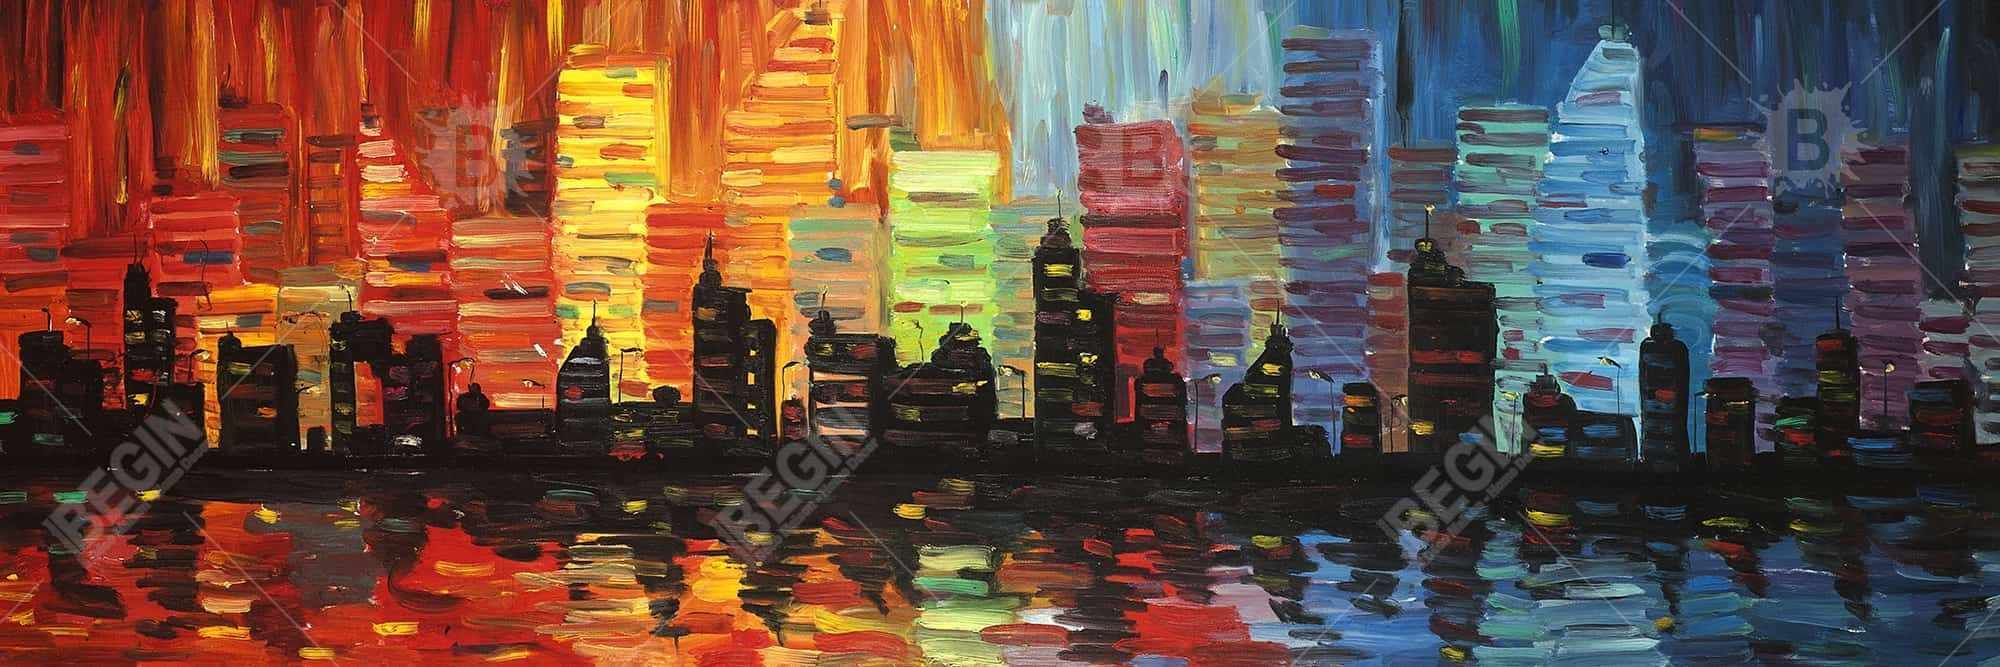 Colorful cityscape